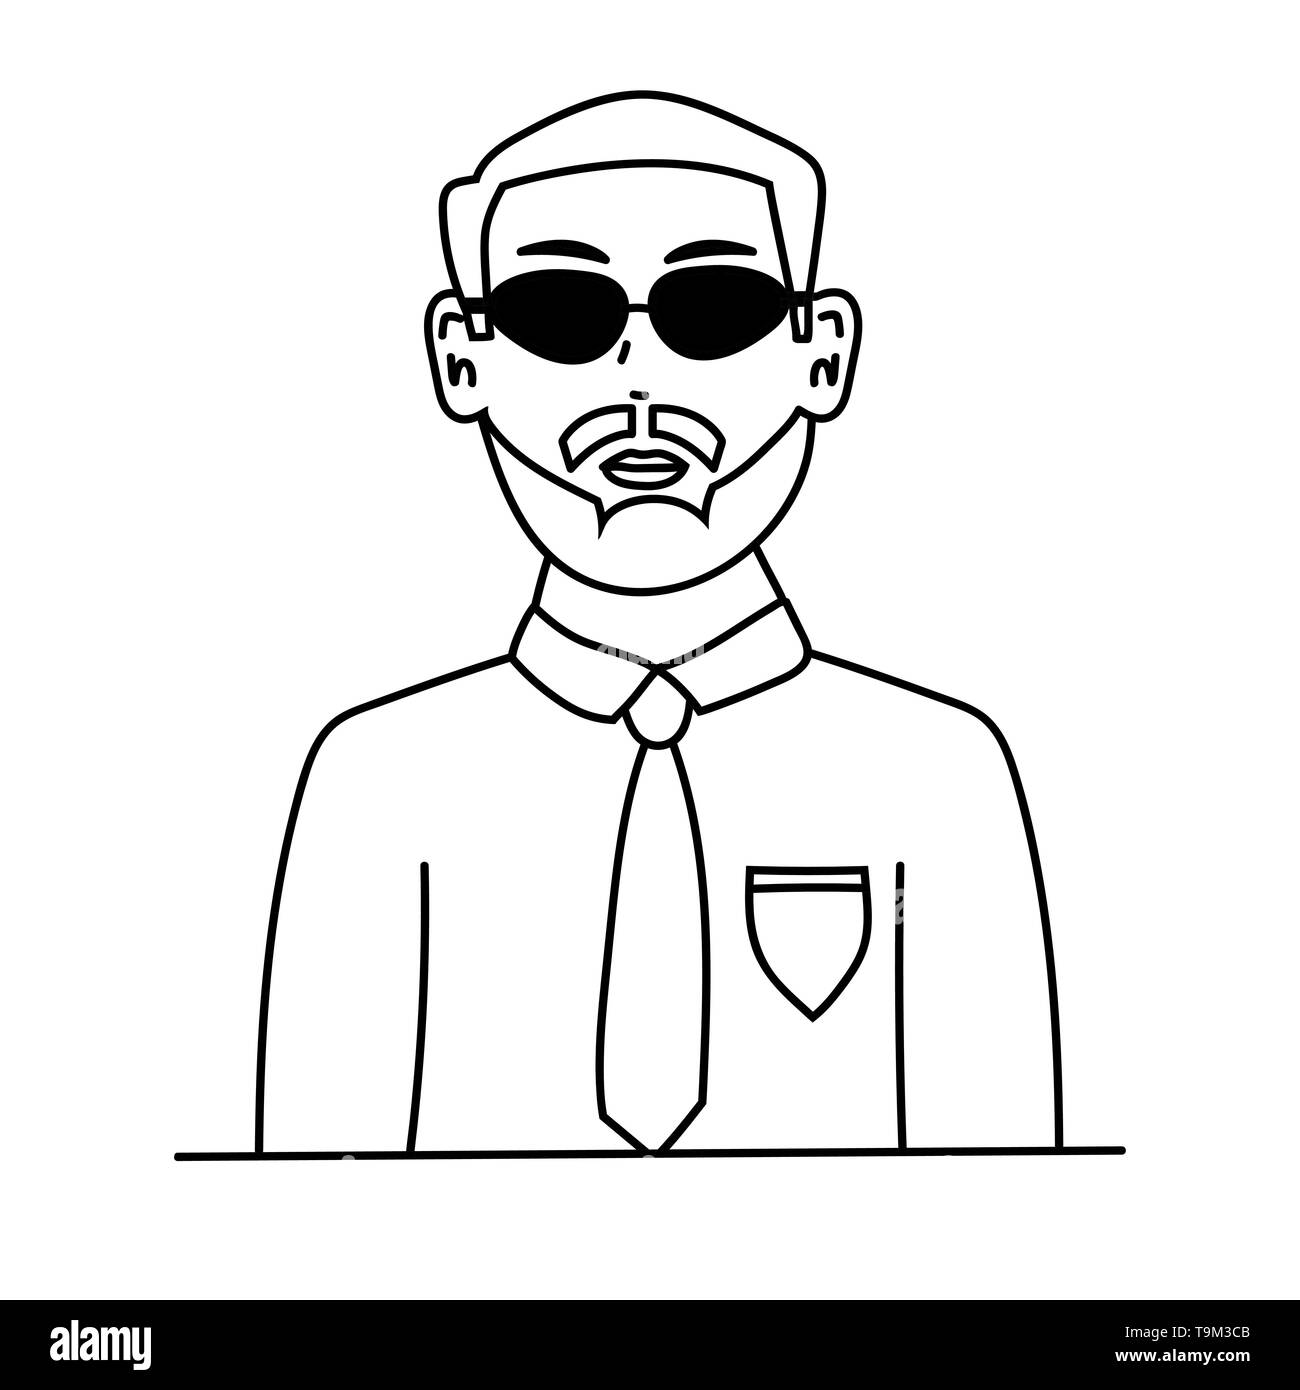 L'Homme à lunettes. Stock vector illustration contour isolé Illustration de Vecteur